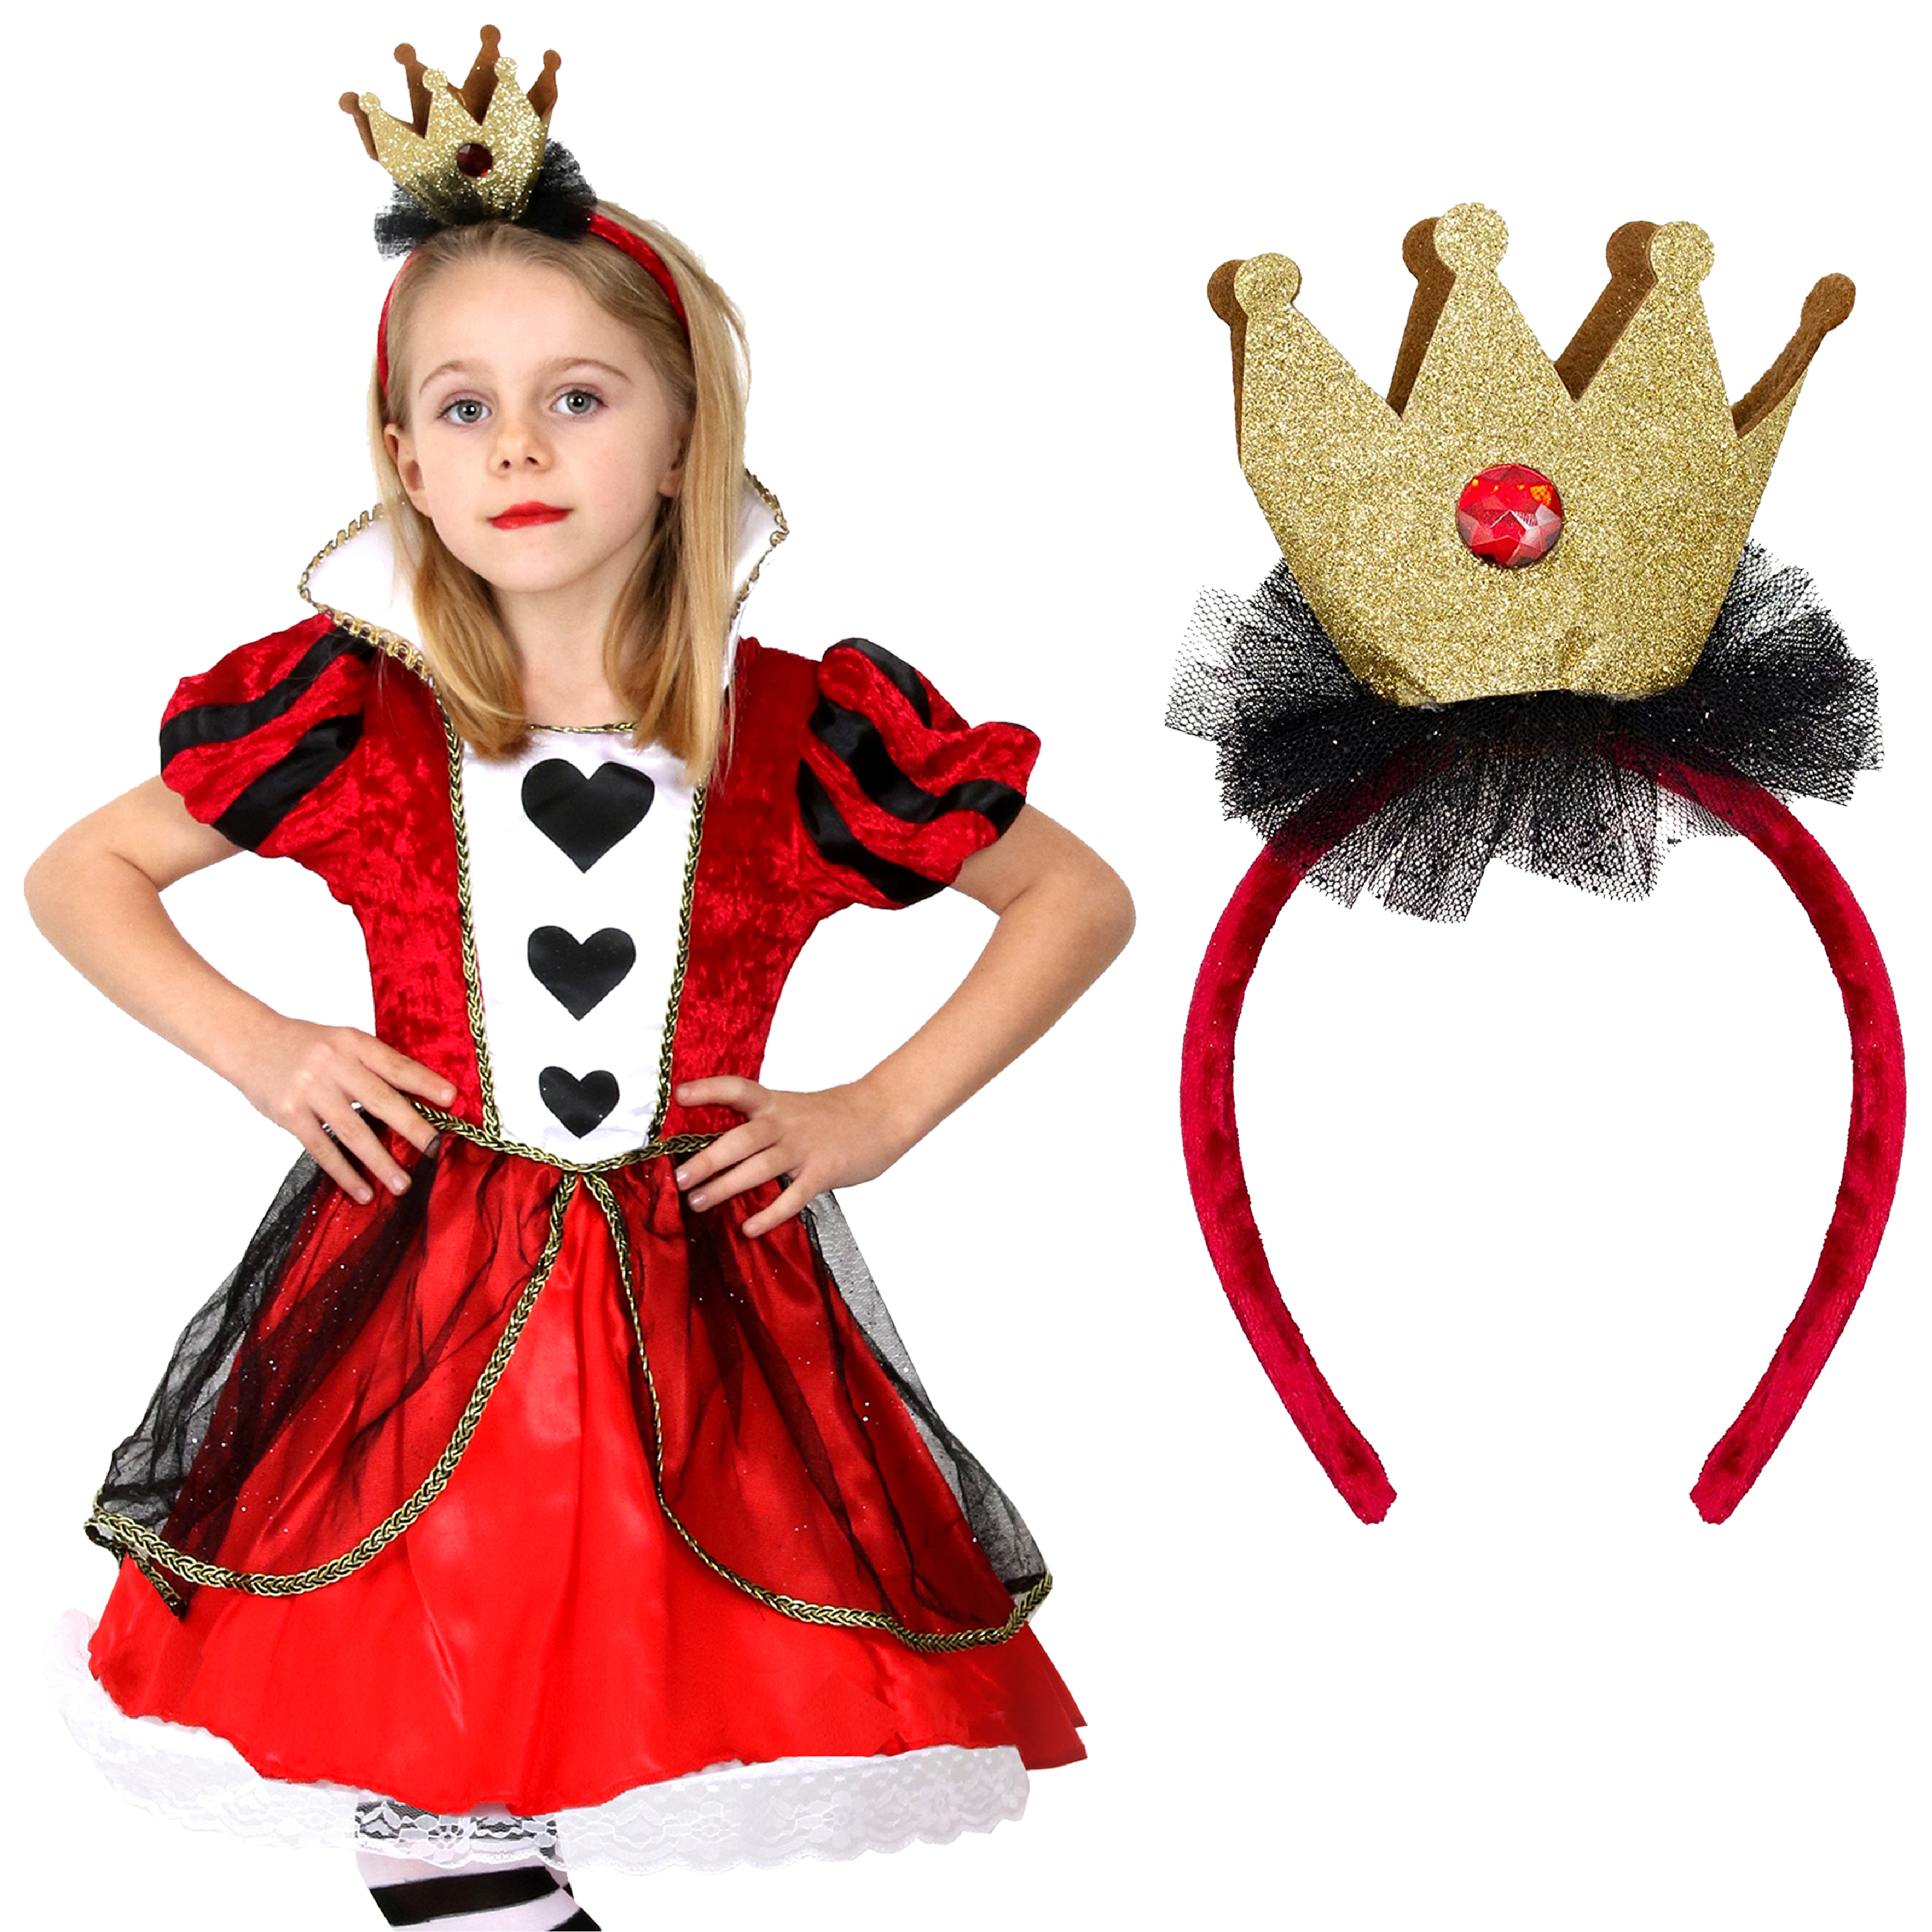 Queen of Hearts Costume, Part III: Neck Ruffle